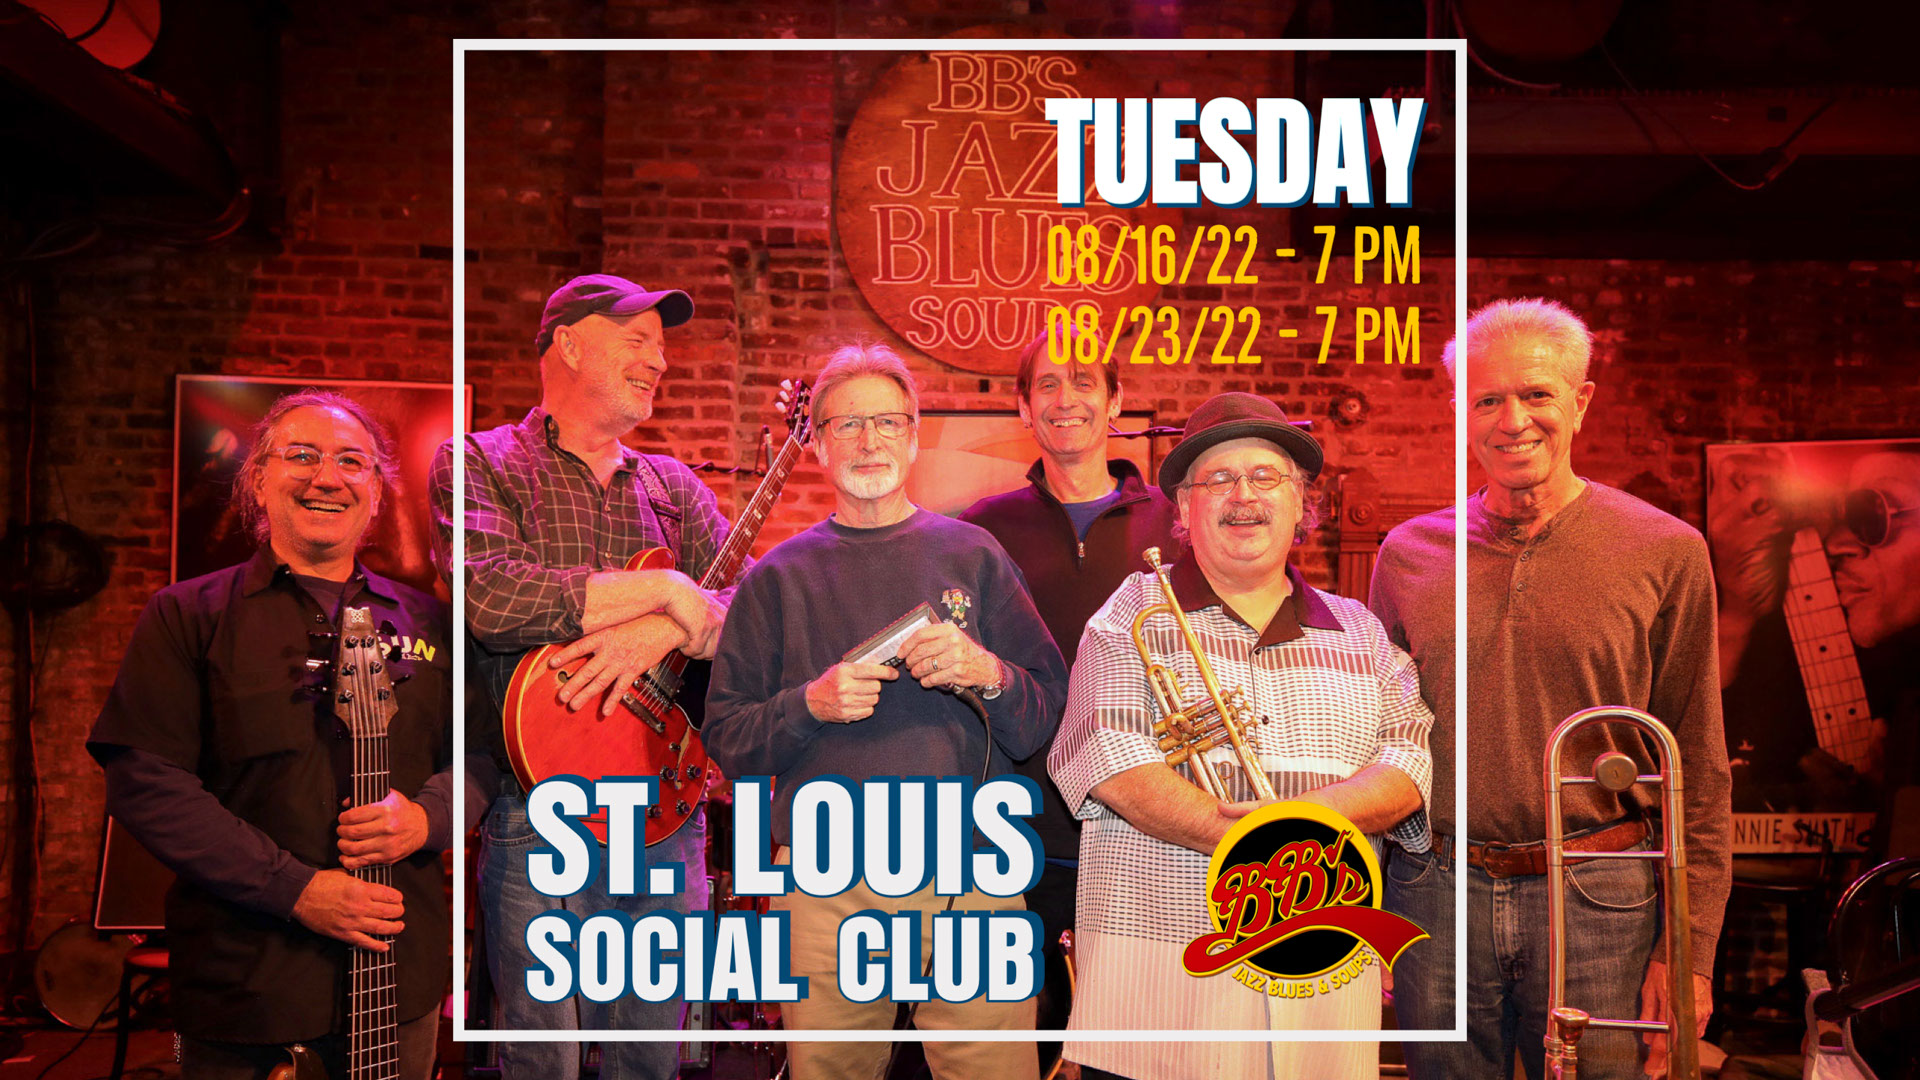 St. Louis Social Club